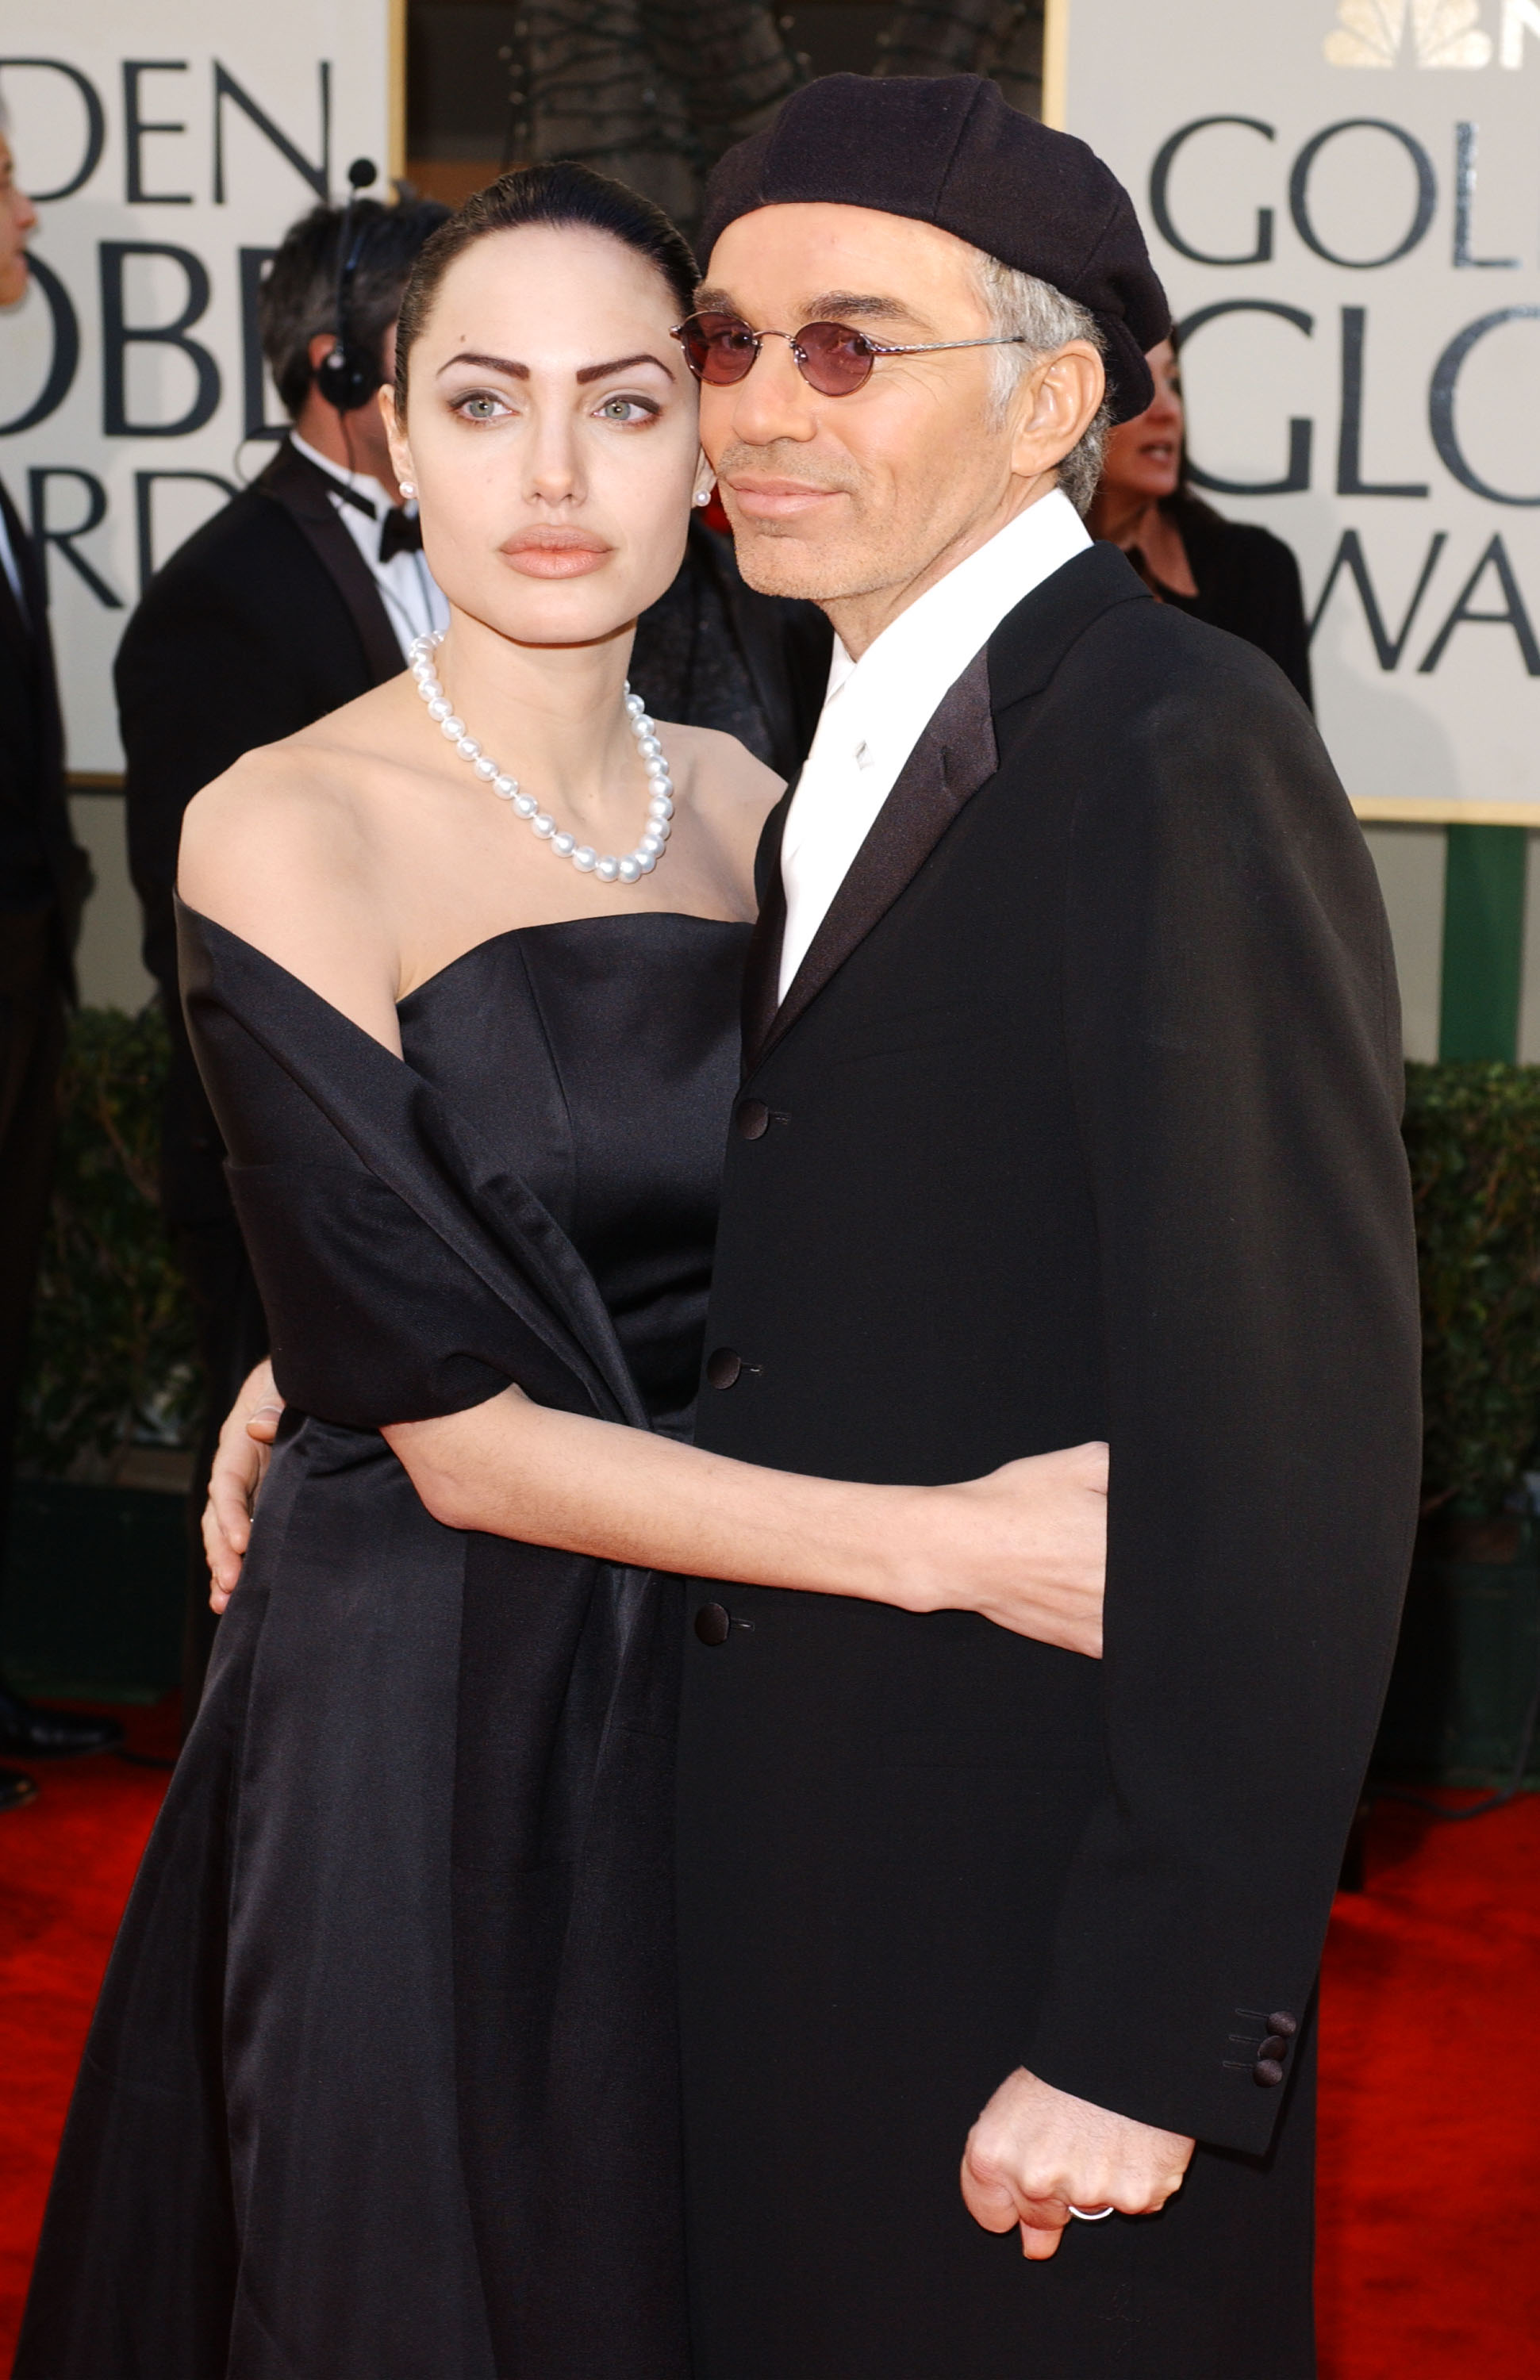 Били Боб Торнтън: Връзката с Джоли беше лудост